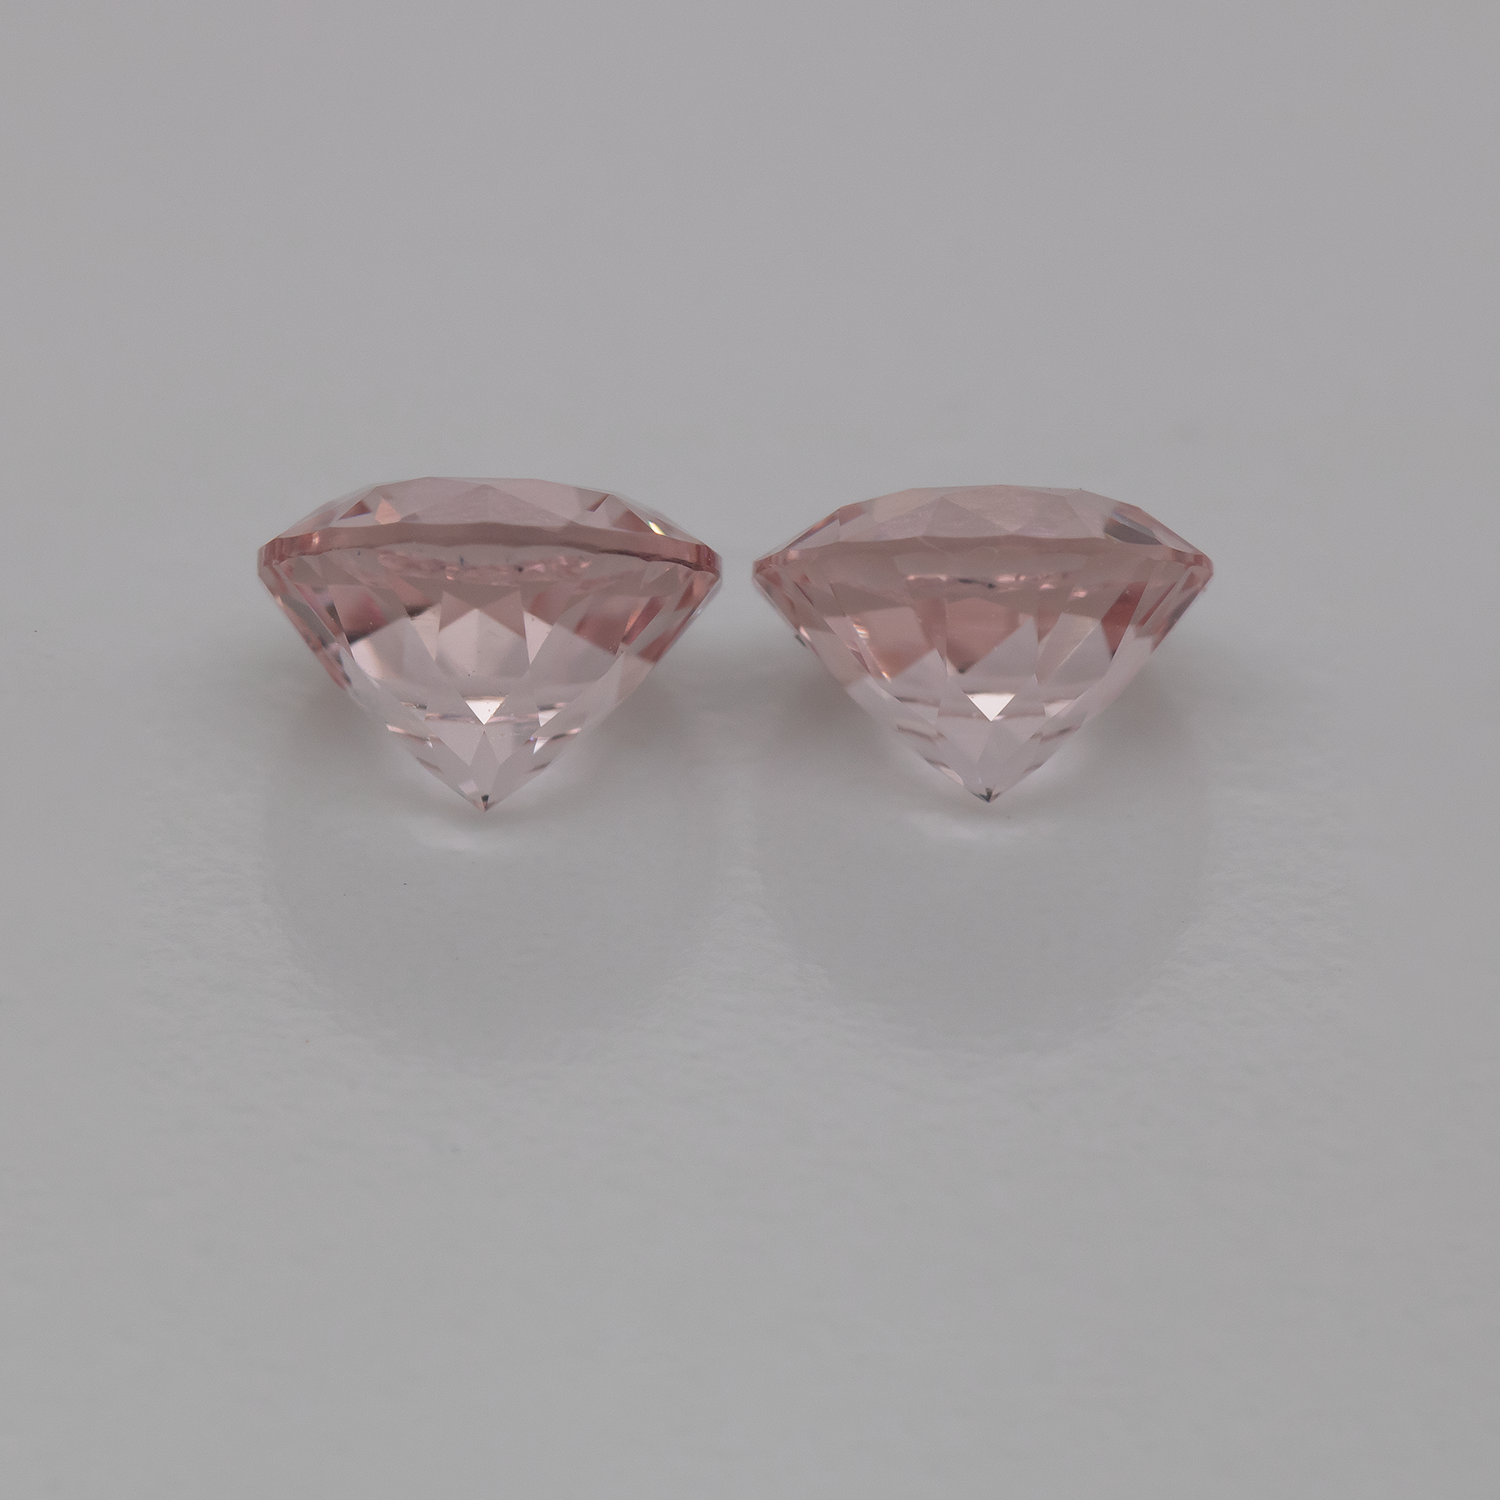 Morganite Pair - pink, round, 5x5 mm, 0.87 - 0.91 cts, No. MO46007